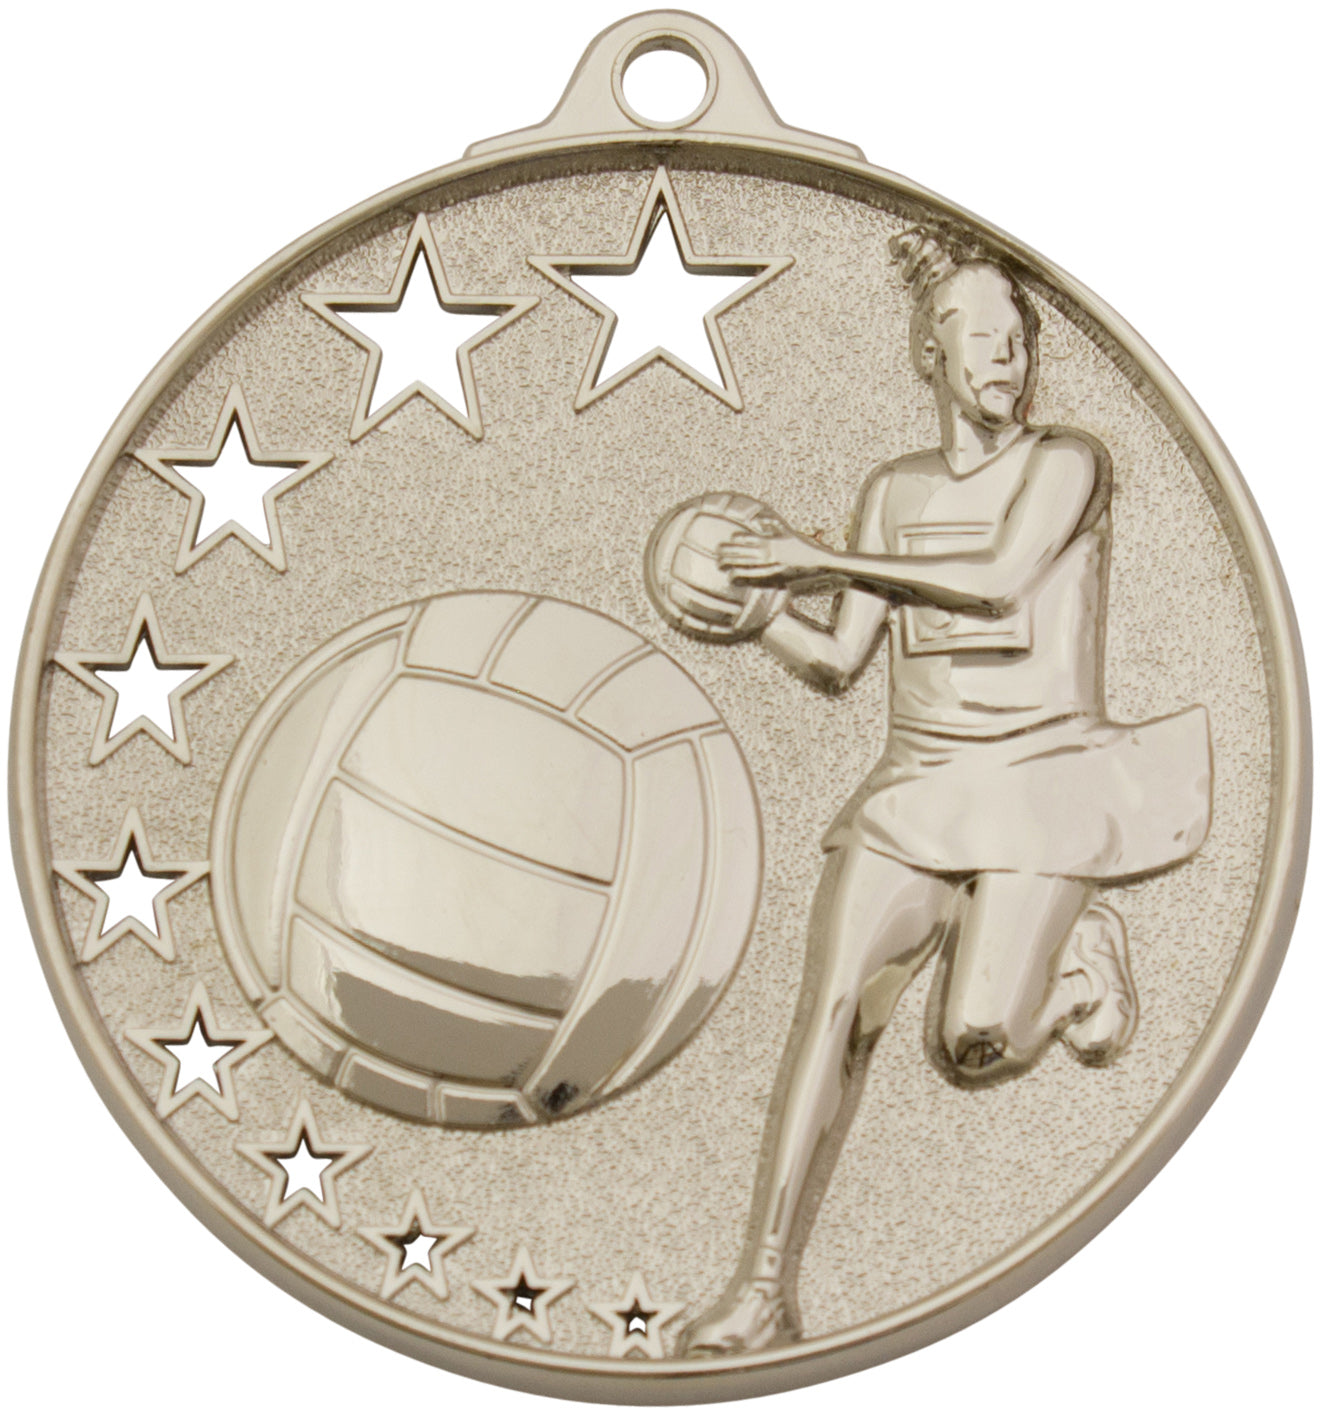 MH911 Netball Medal